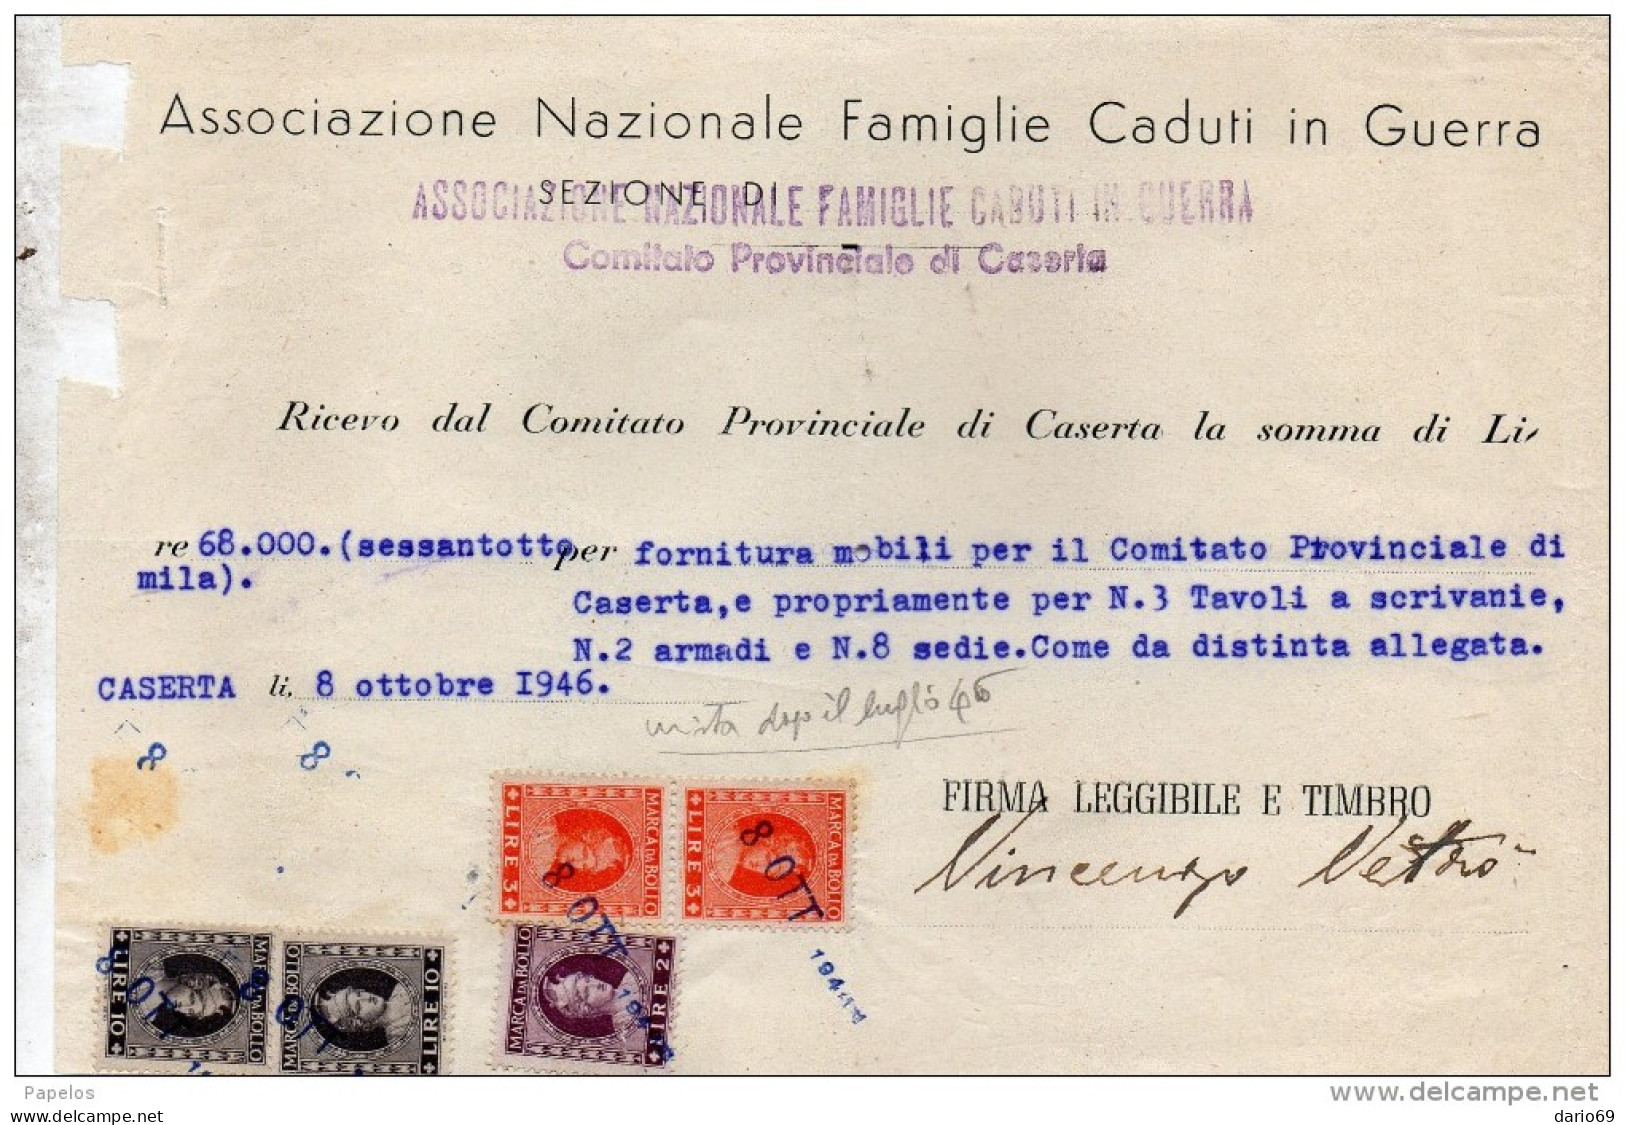 1946 CASERTA ASSOCIAZIONE  NAZIONALE FAMIGLIE CADUTE IN GUERRA - Italy